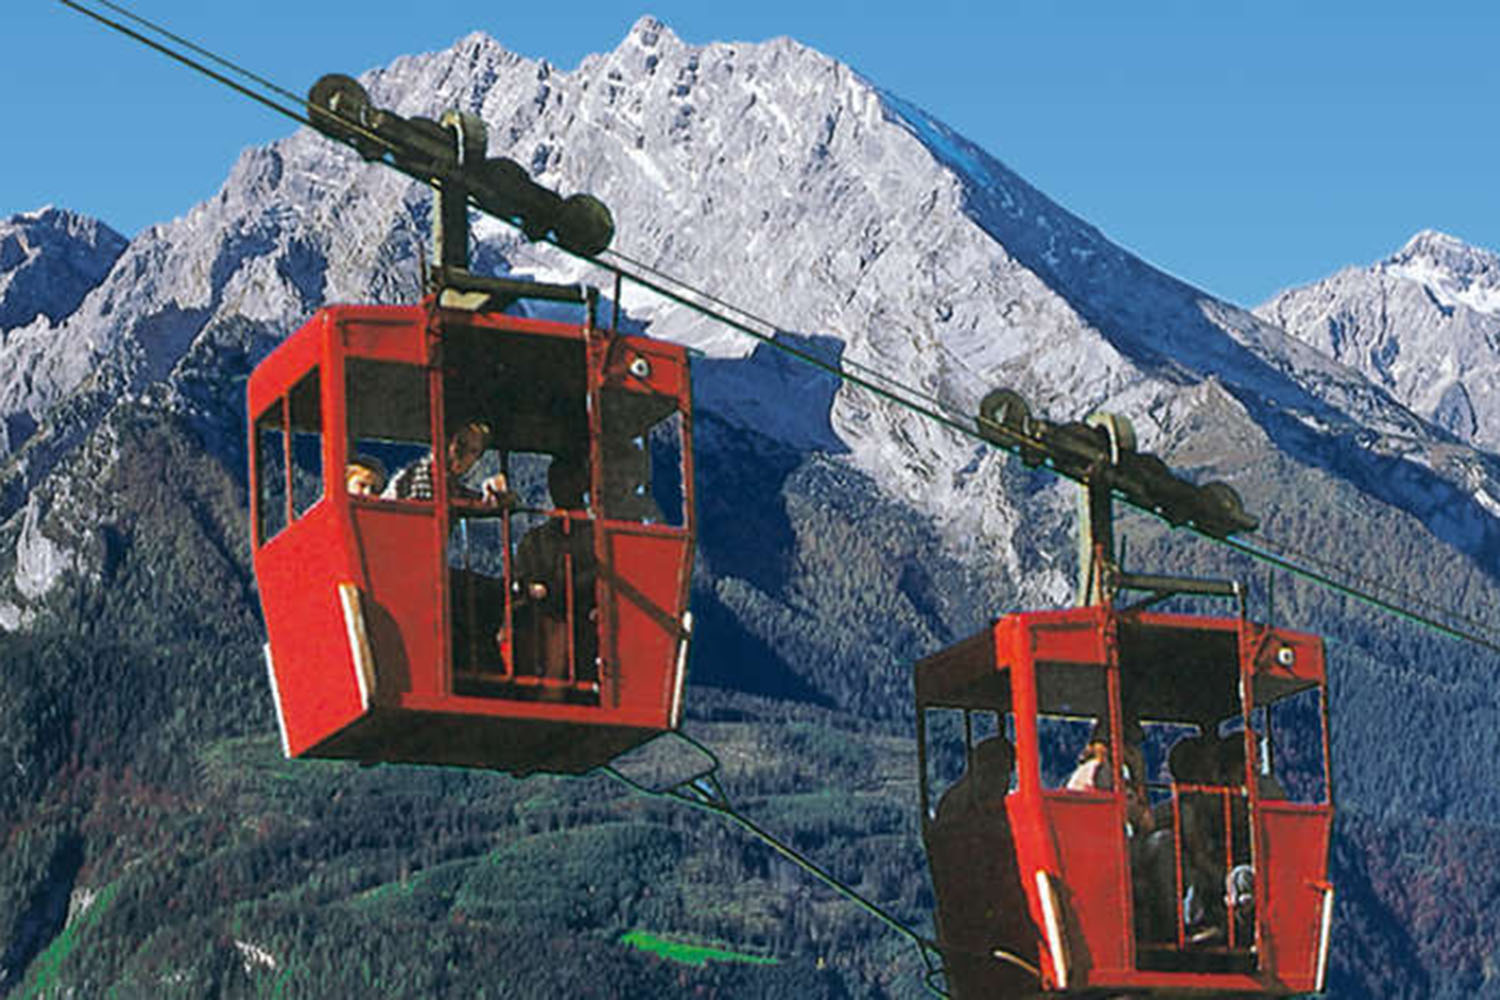 Bild der Obersalzbergbahn mit dem Watzmann im Hintergrund